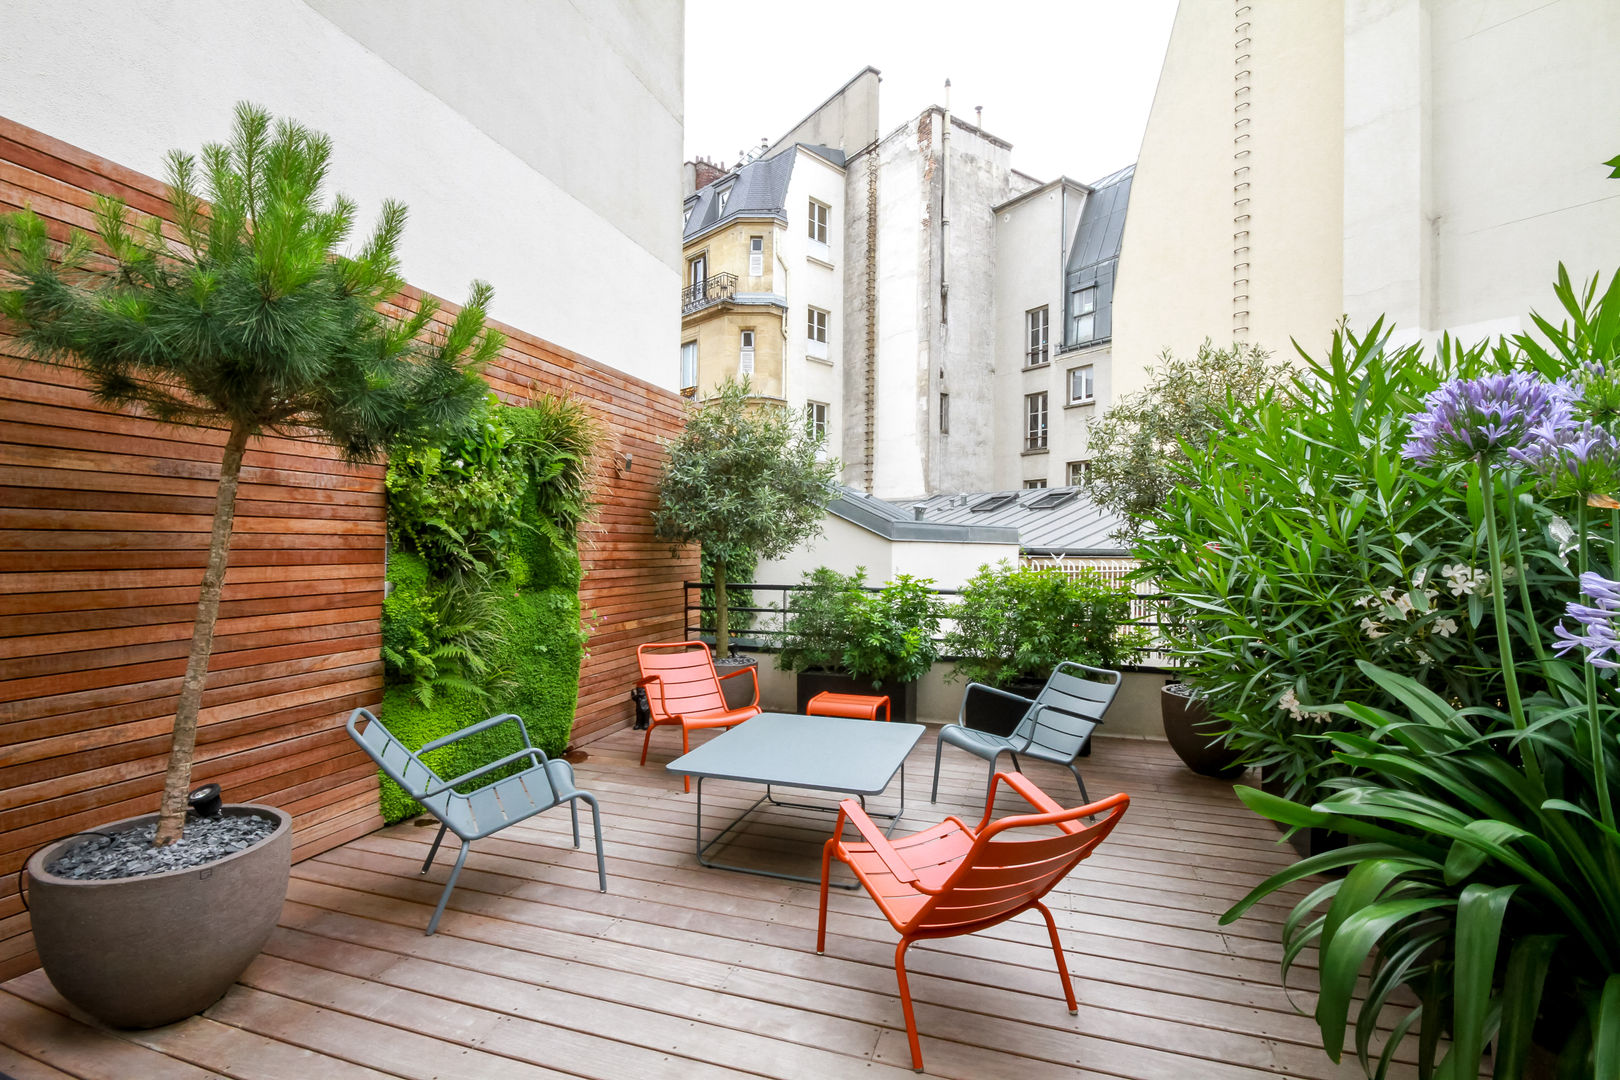 Toit terrasse - Paris 8 Terrasses des Oliviers - Paysagiste Paris Balcon, Veranda & Terrasse modernes fermob,plancher en bois,mur vegetal,bac metal